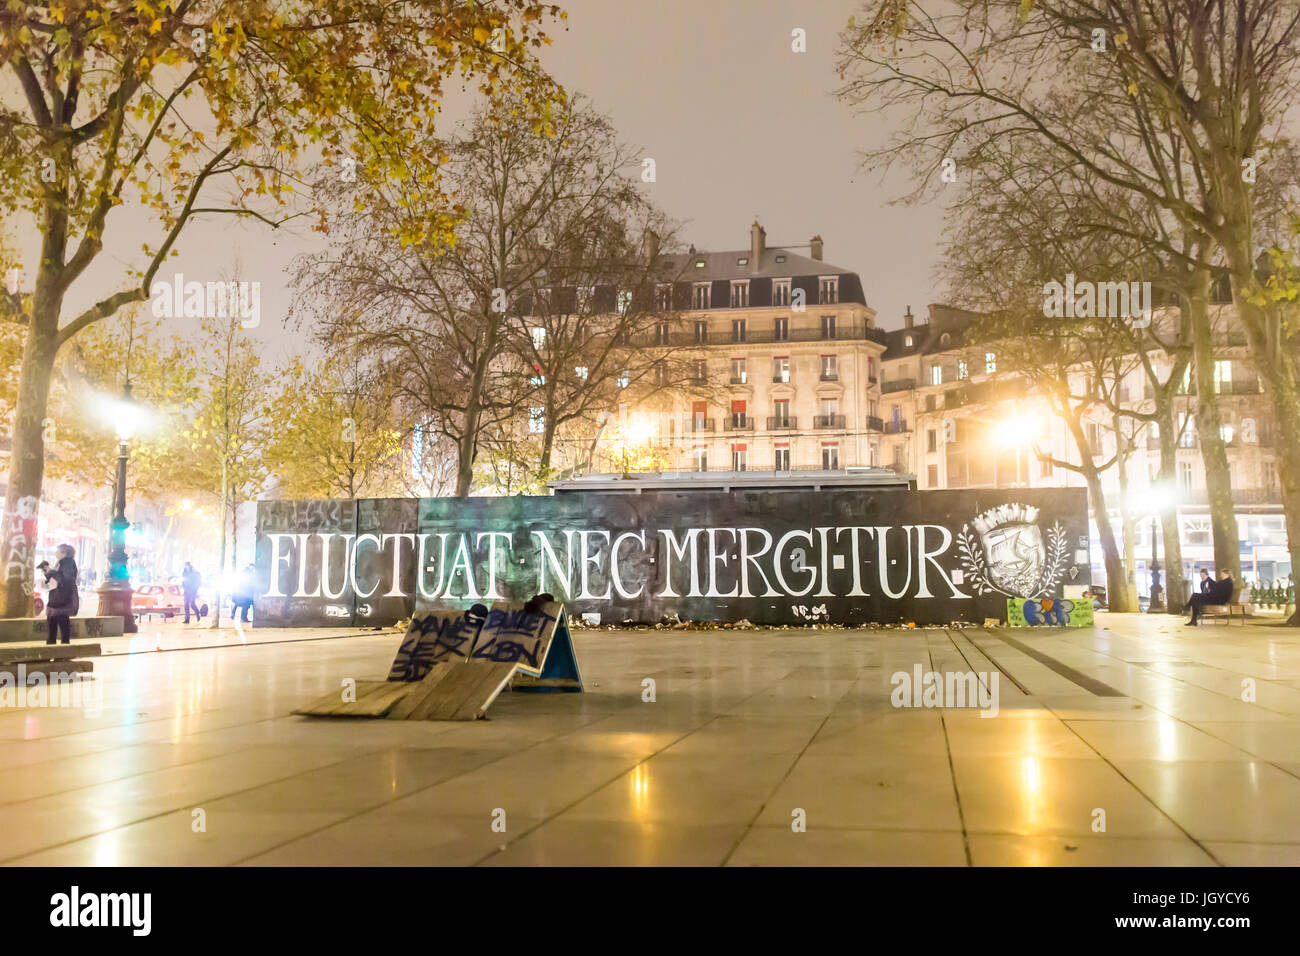 Schwankungsbandbreiten nec mergitur Motto. Spontane Hommage an die Opfer der Terroranschläge in Paris, den 13. November 2015. Stockfoto